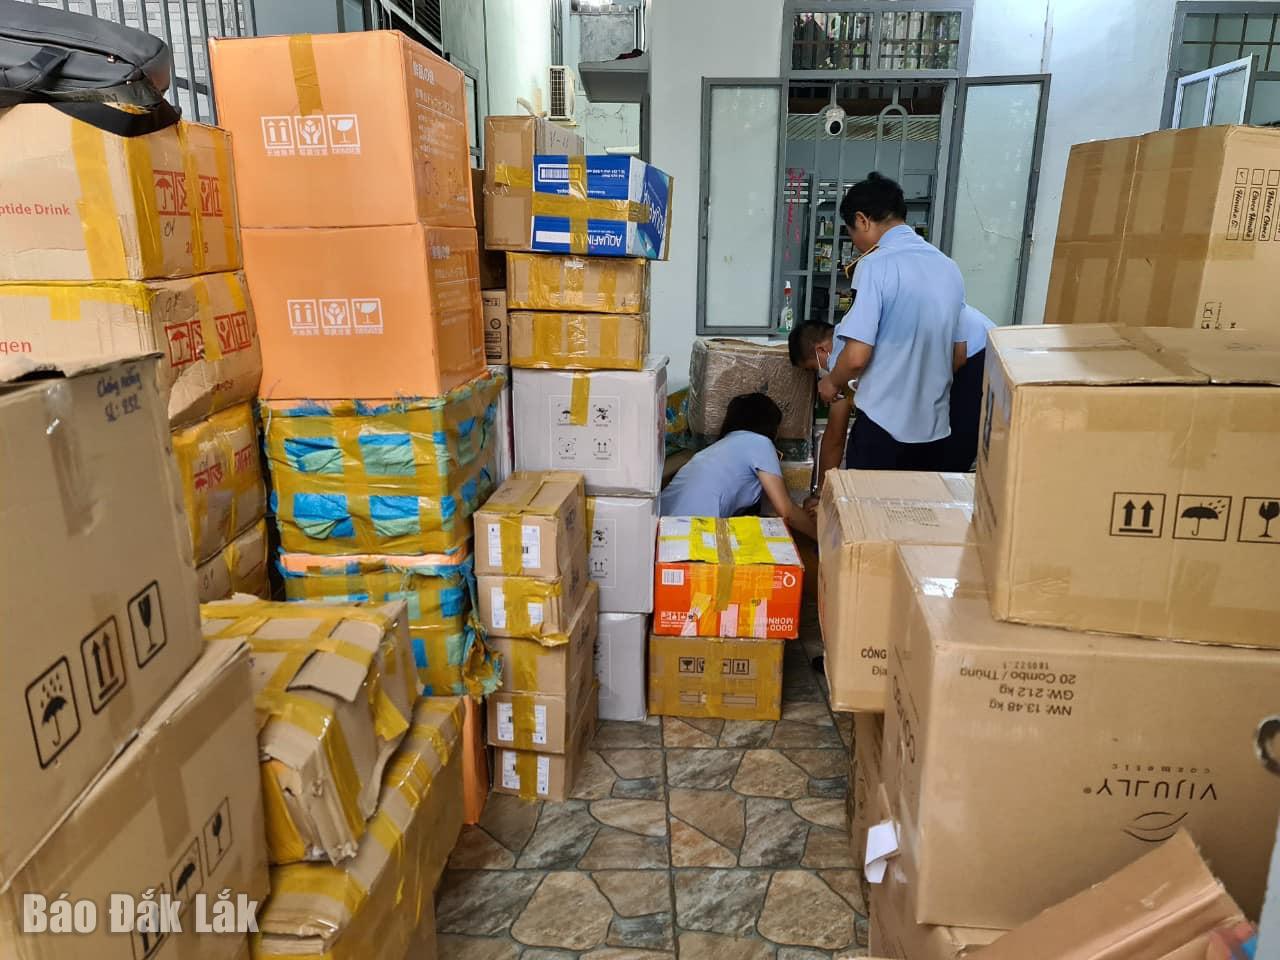 Đắk Lắk: Xử phạt 61 triệu đồng một cơ sở kinh doanh mỹ phẩm nhập lậu, không rõ nguồn gốc